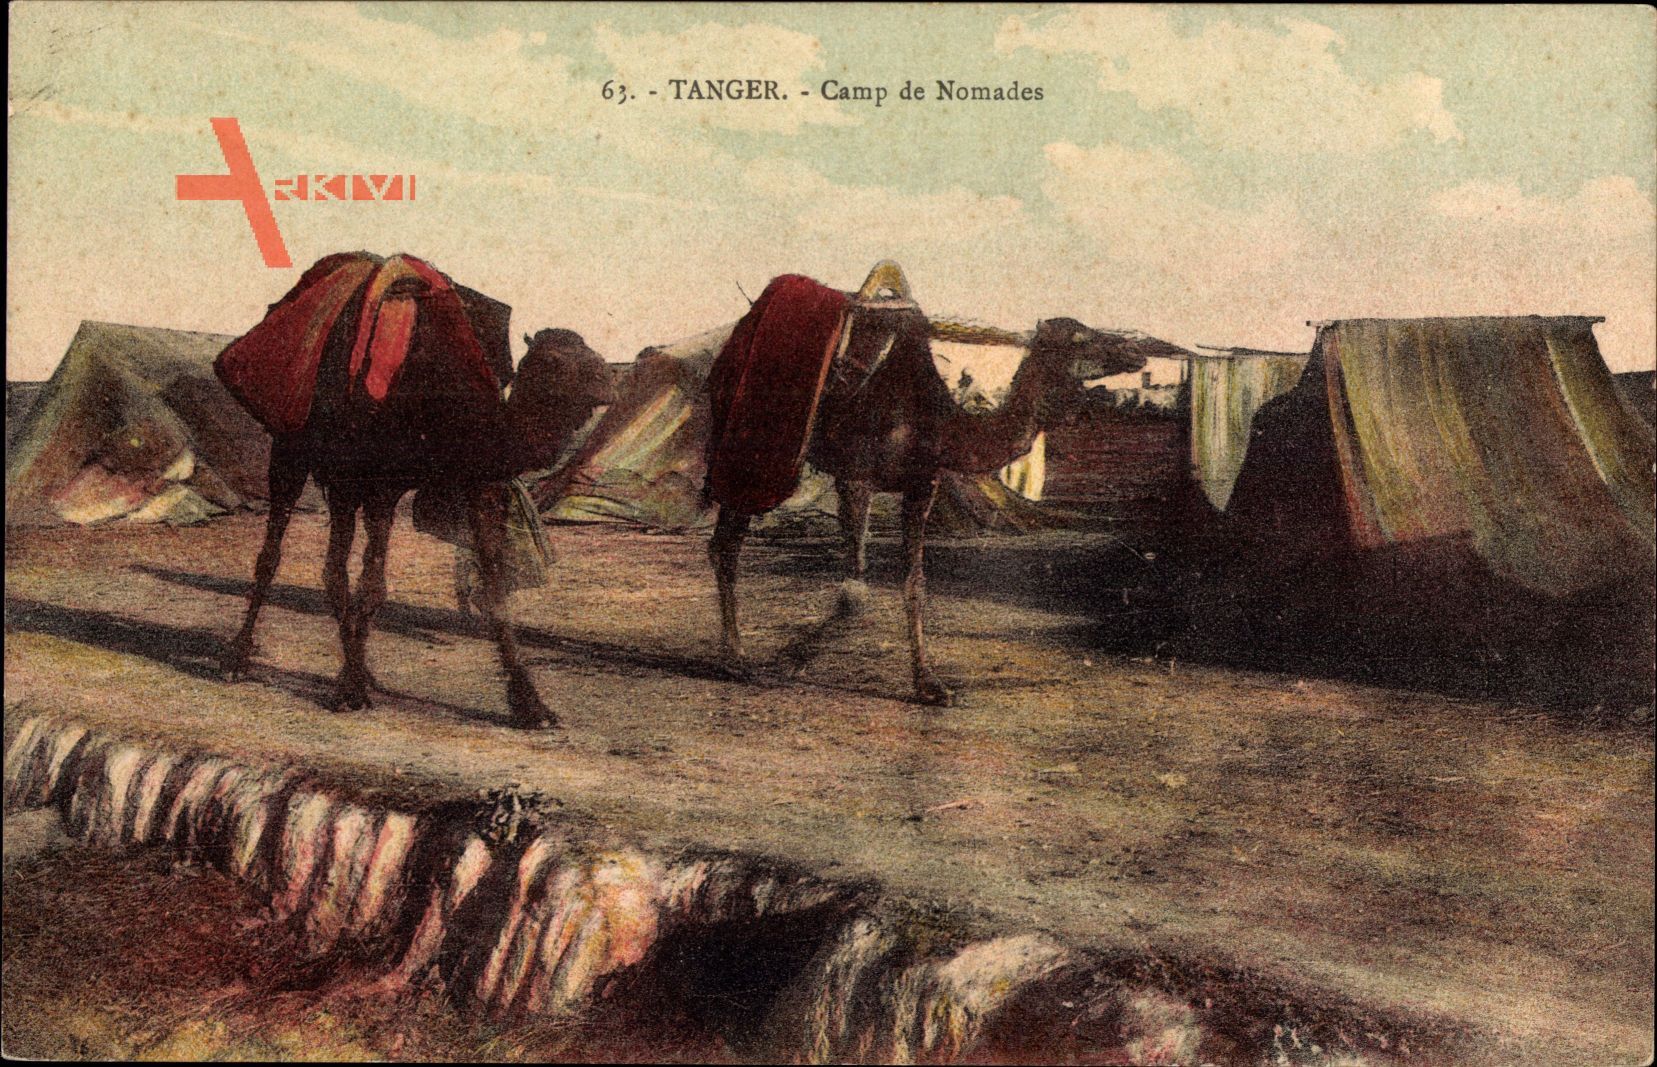 Tanger Marokko, Camp de Nomades, Blick auf ein Nomadencamp, Kamele